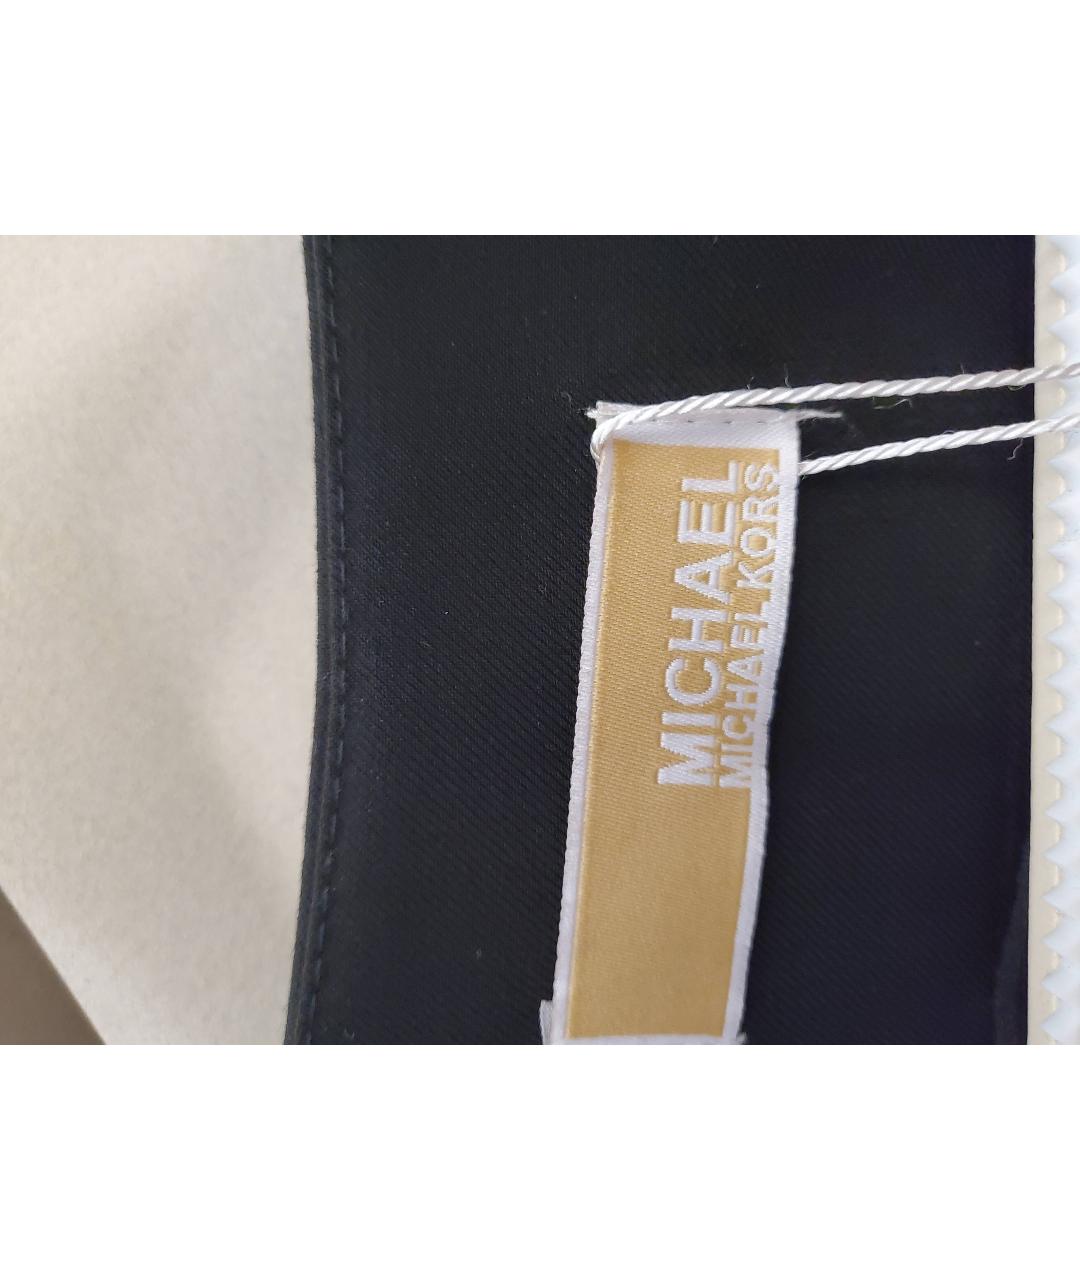 MICHAEL KORS Черный полиэстеровый жакет/пиджак, фото 3